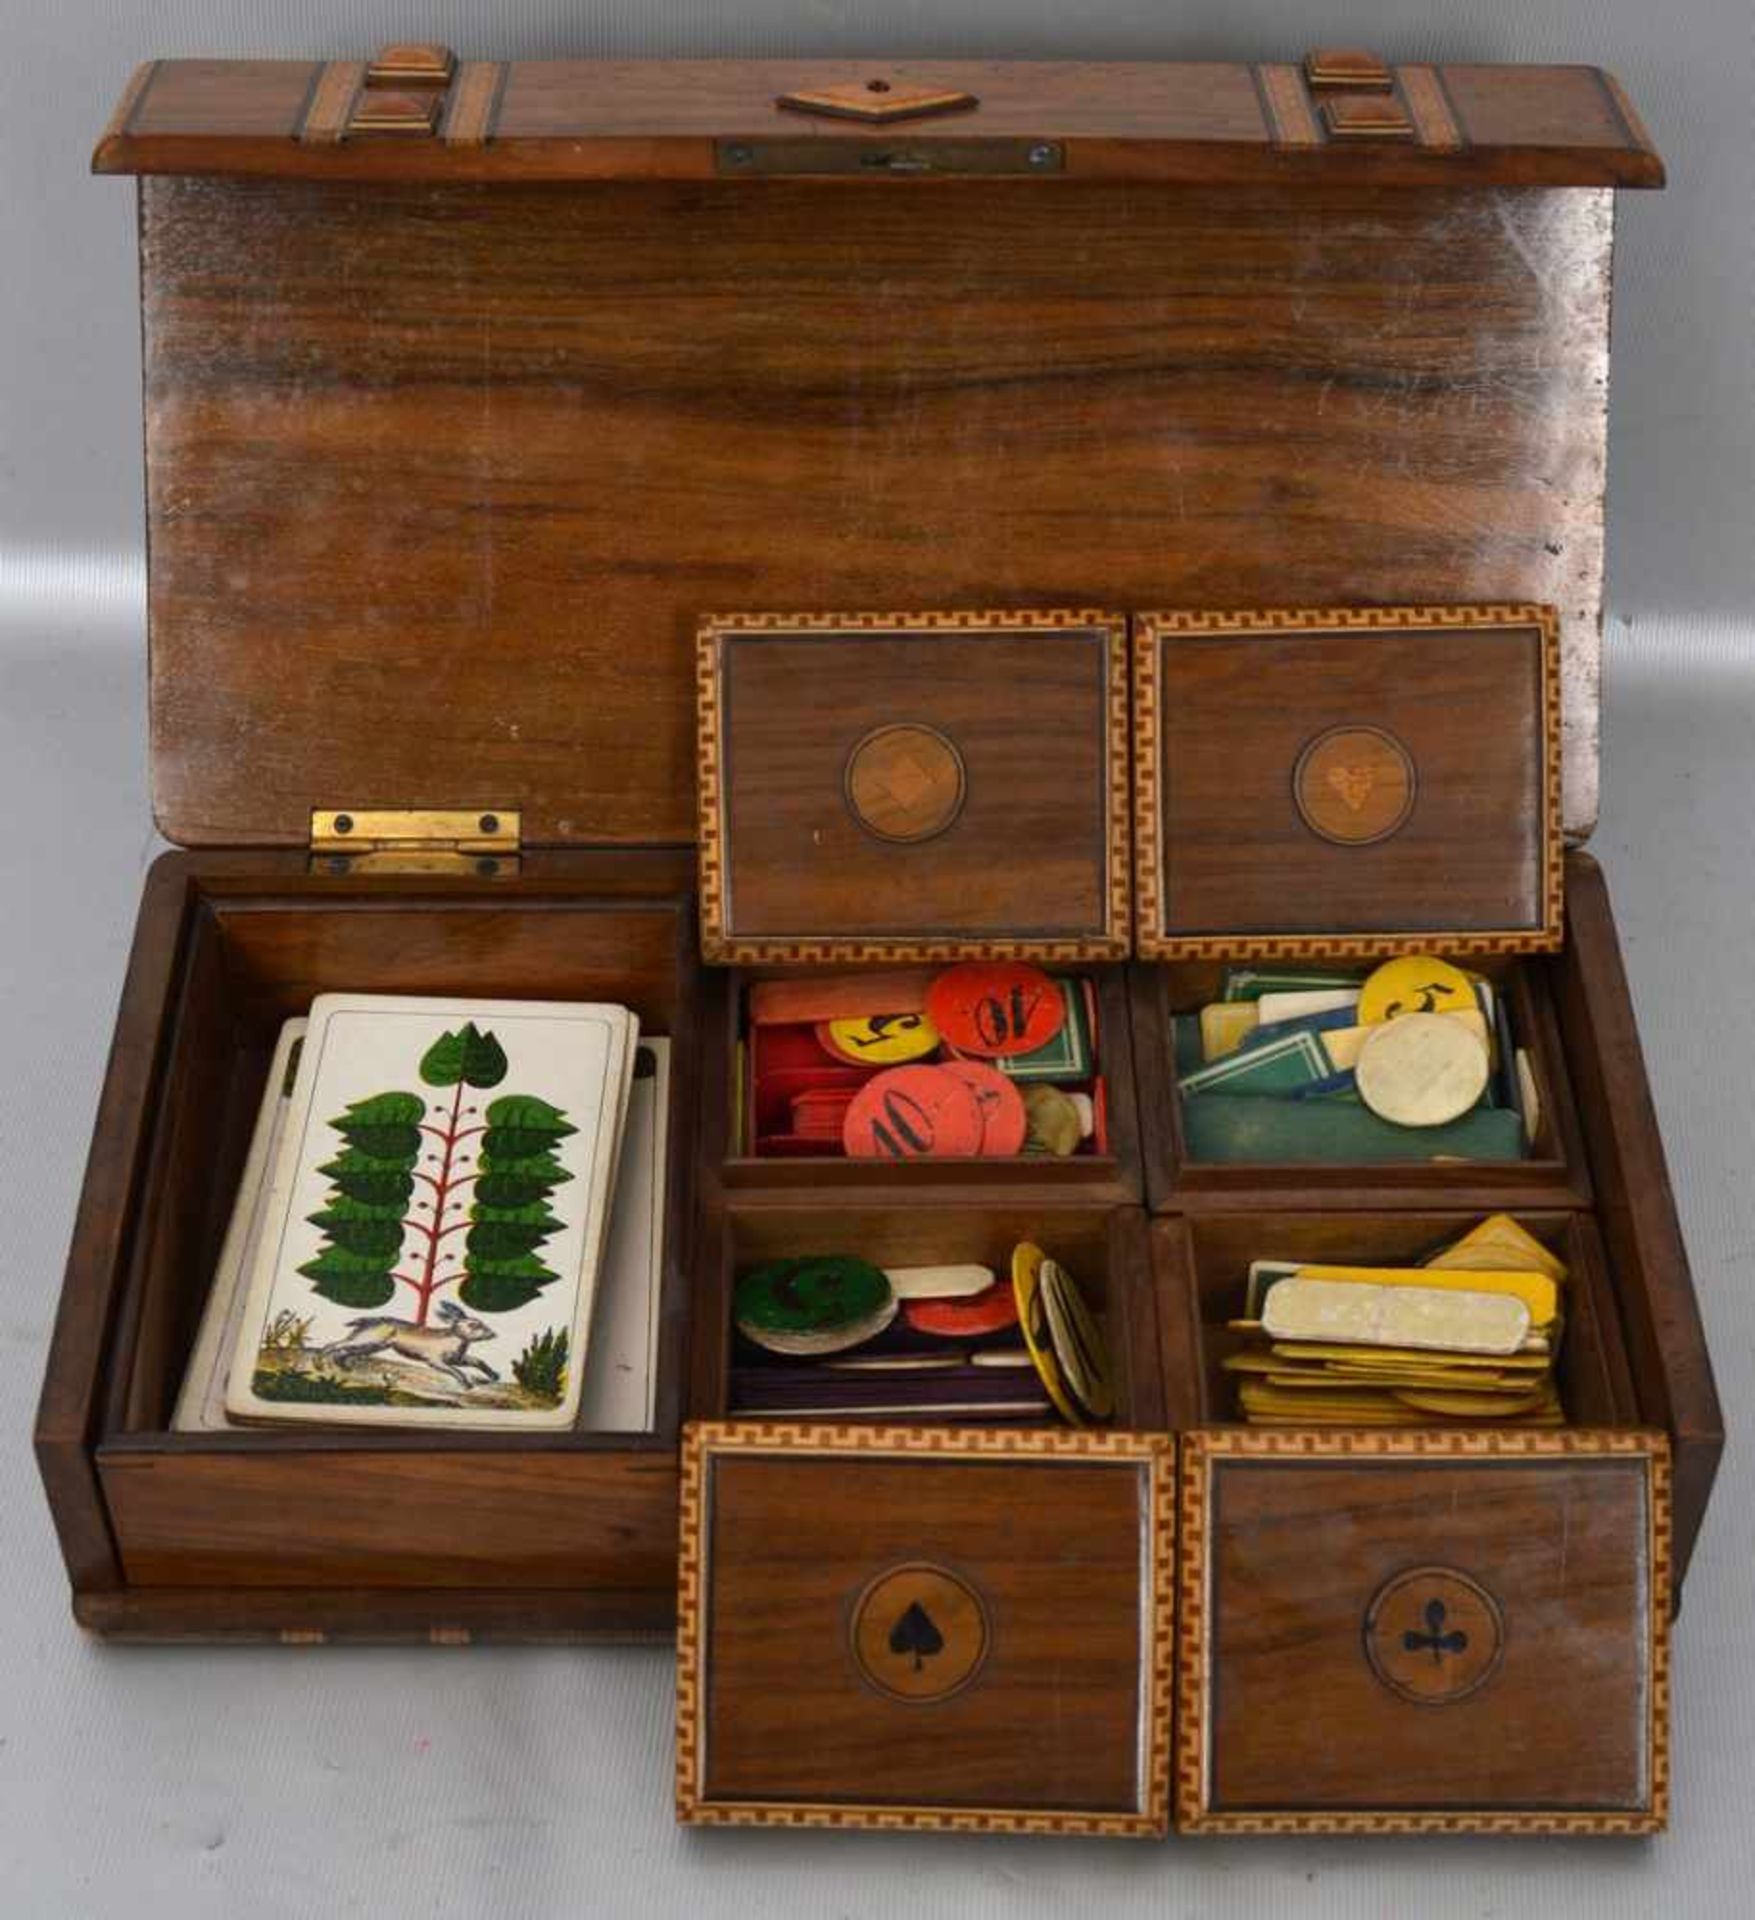 SpielschatulleNussbaum, mit Kartenspiel intarsiert, Innenleben mit vier Deckeldosen für Jetons etc.,